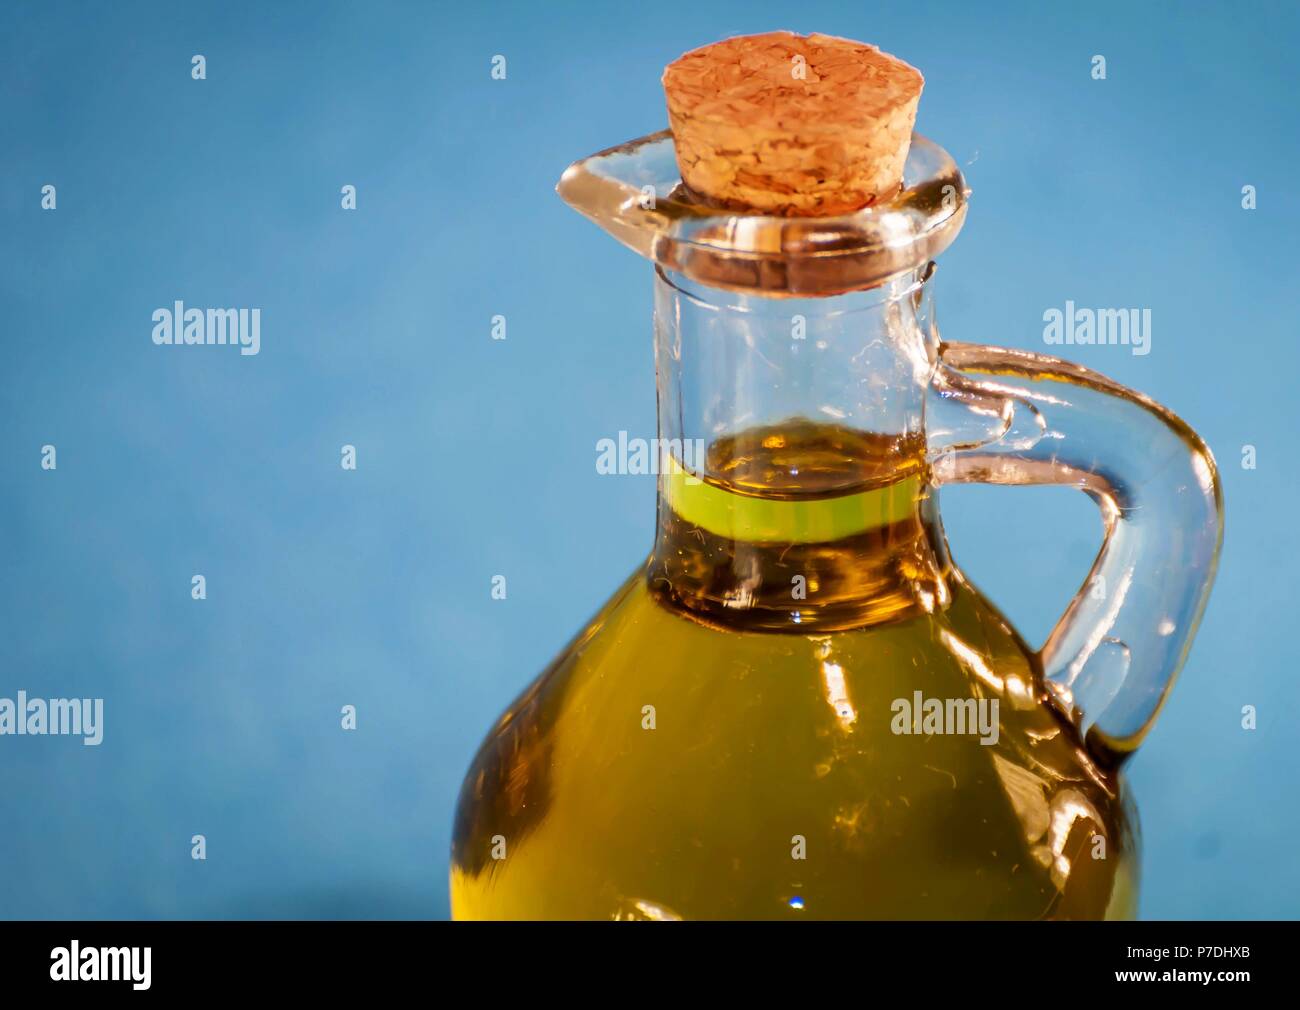 Une jolie petite bouteille en verre avec de l'huile d'olive vierge